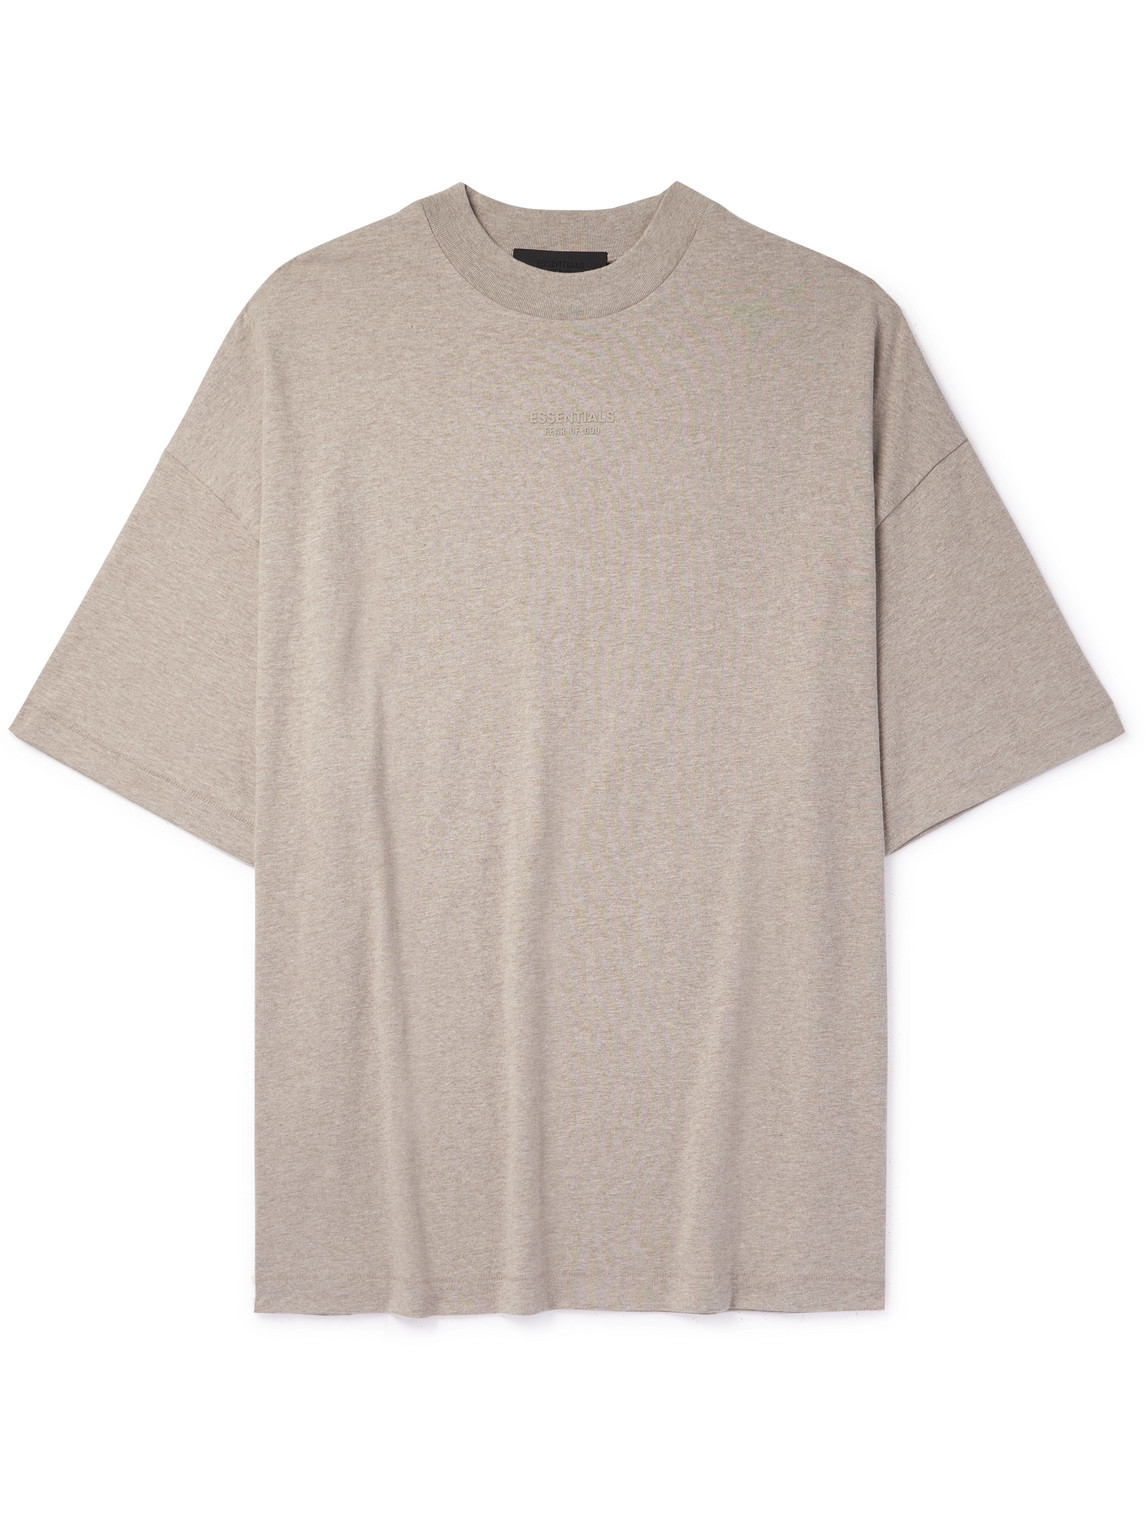 Essentials Logo-appliquéd Cotton-jersey Mock-neck T-shirt In Neutrals